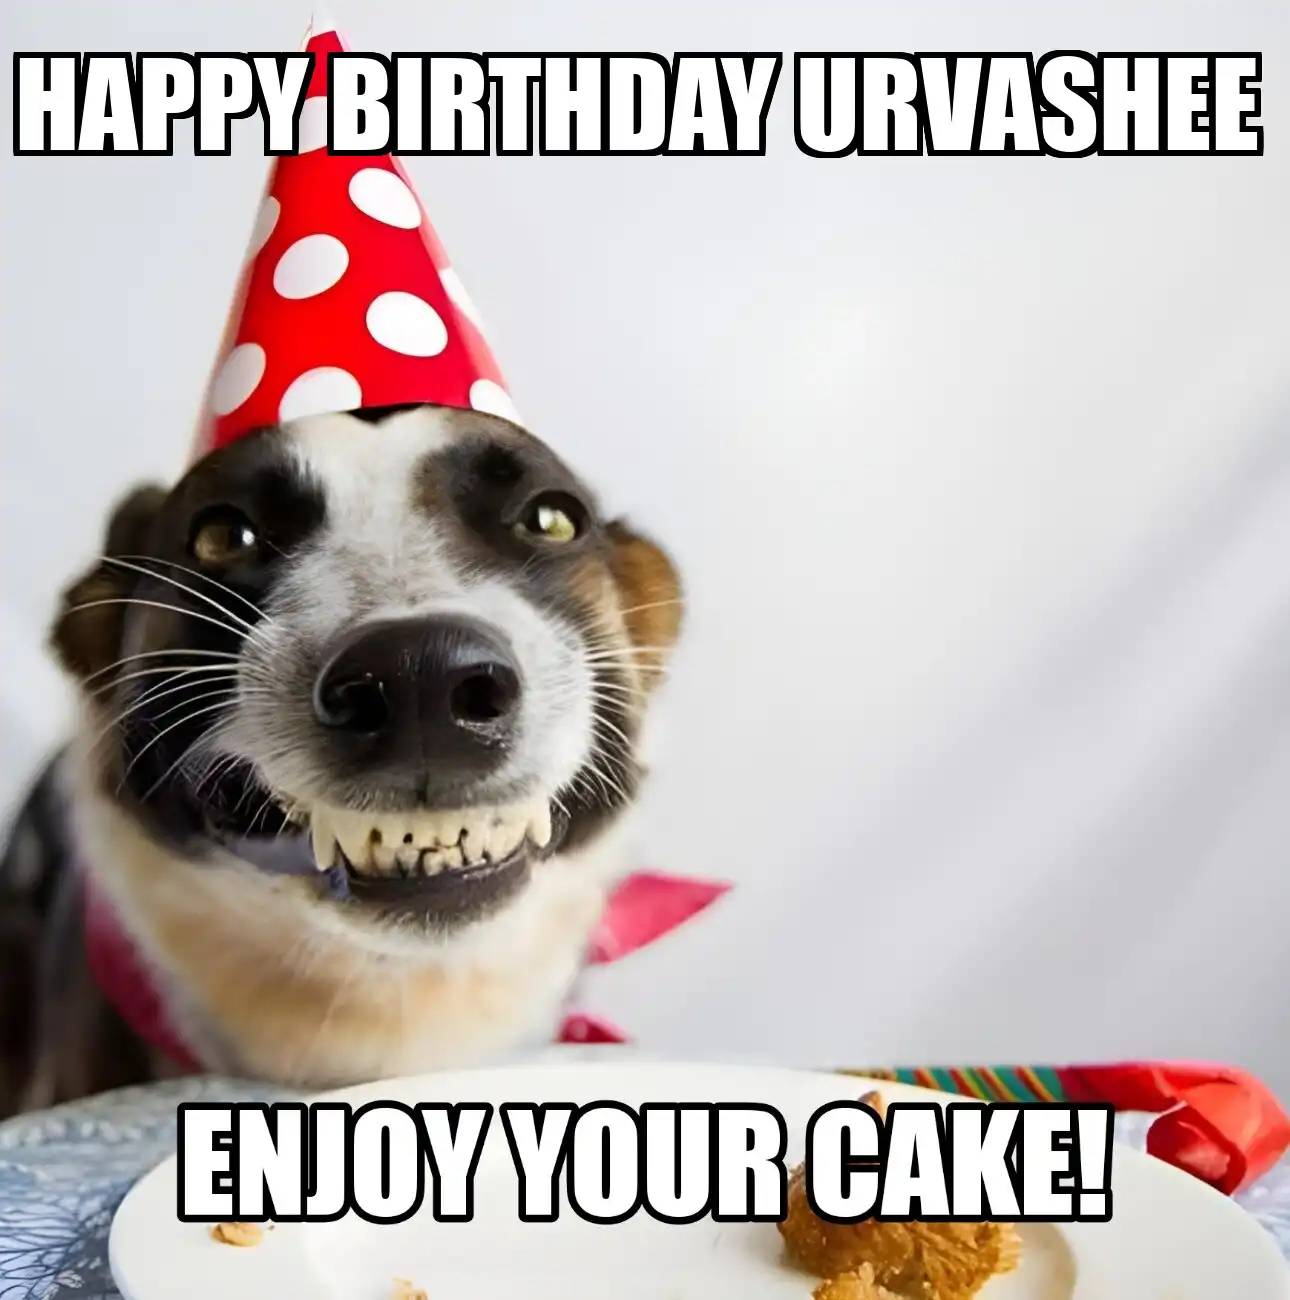 Happy Birthday Urvashee Enjoy Your Cake Dog Meme